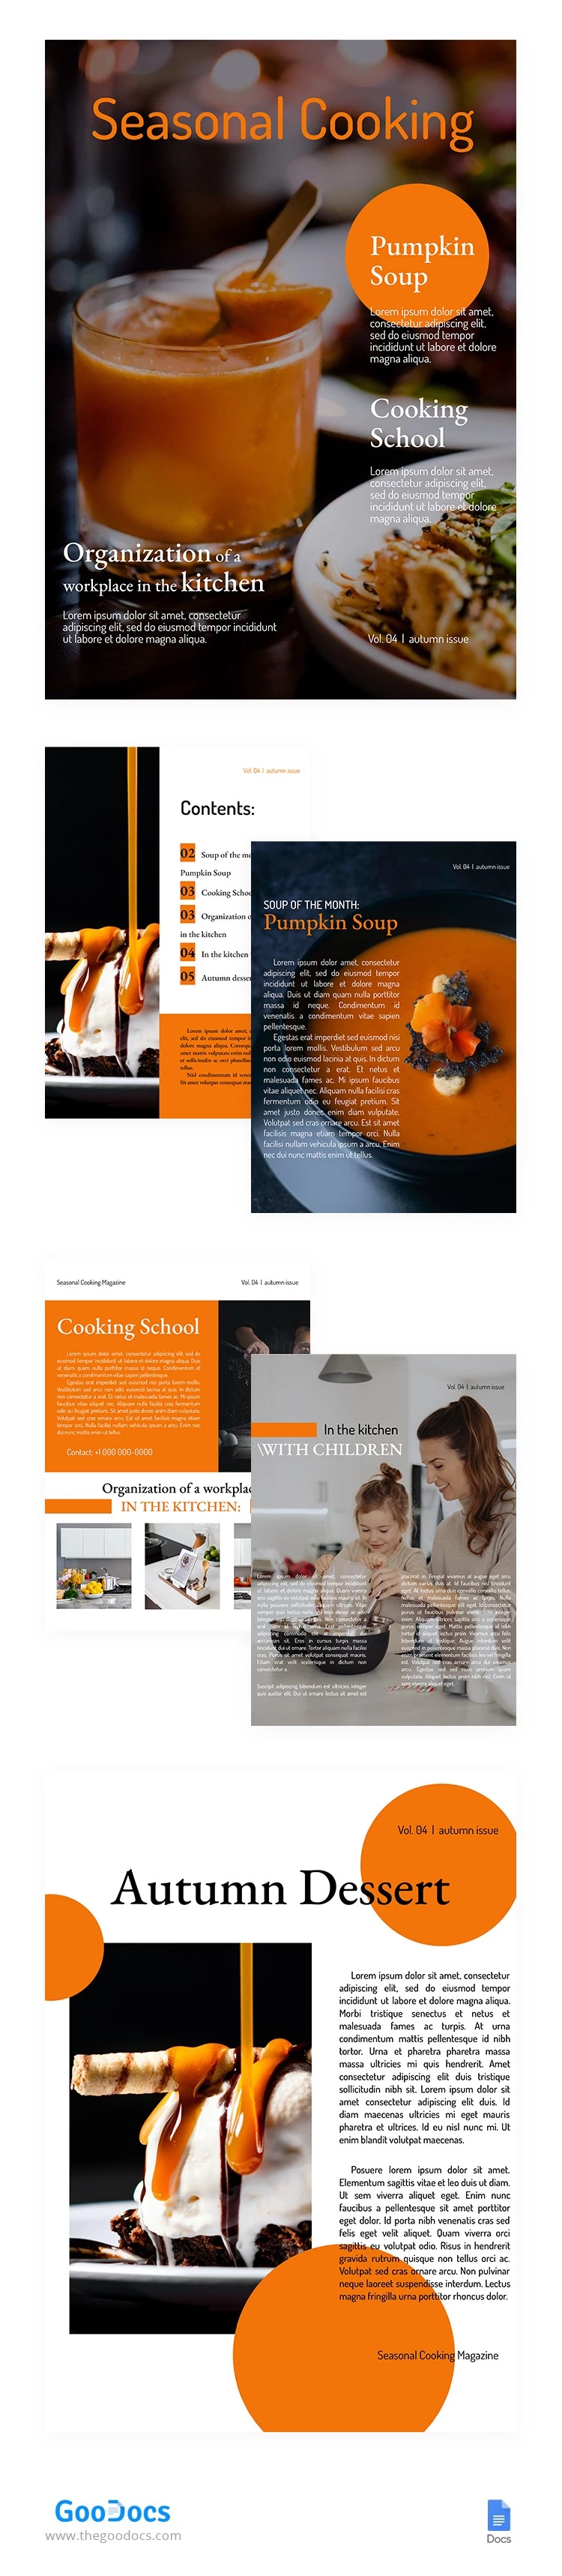 Magazine de cuisine saisonnière - free Google Docs Template - 10062532